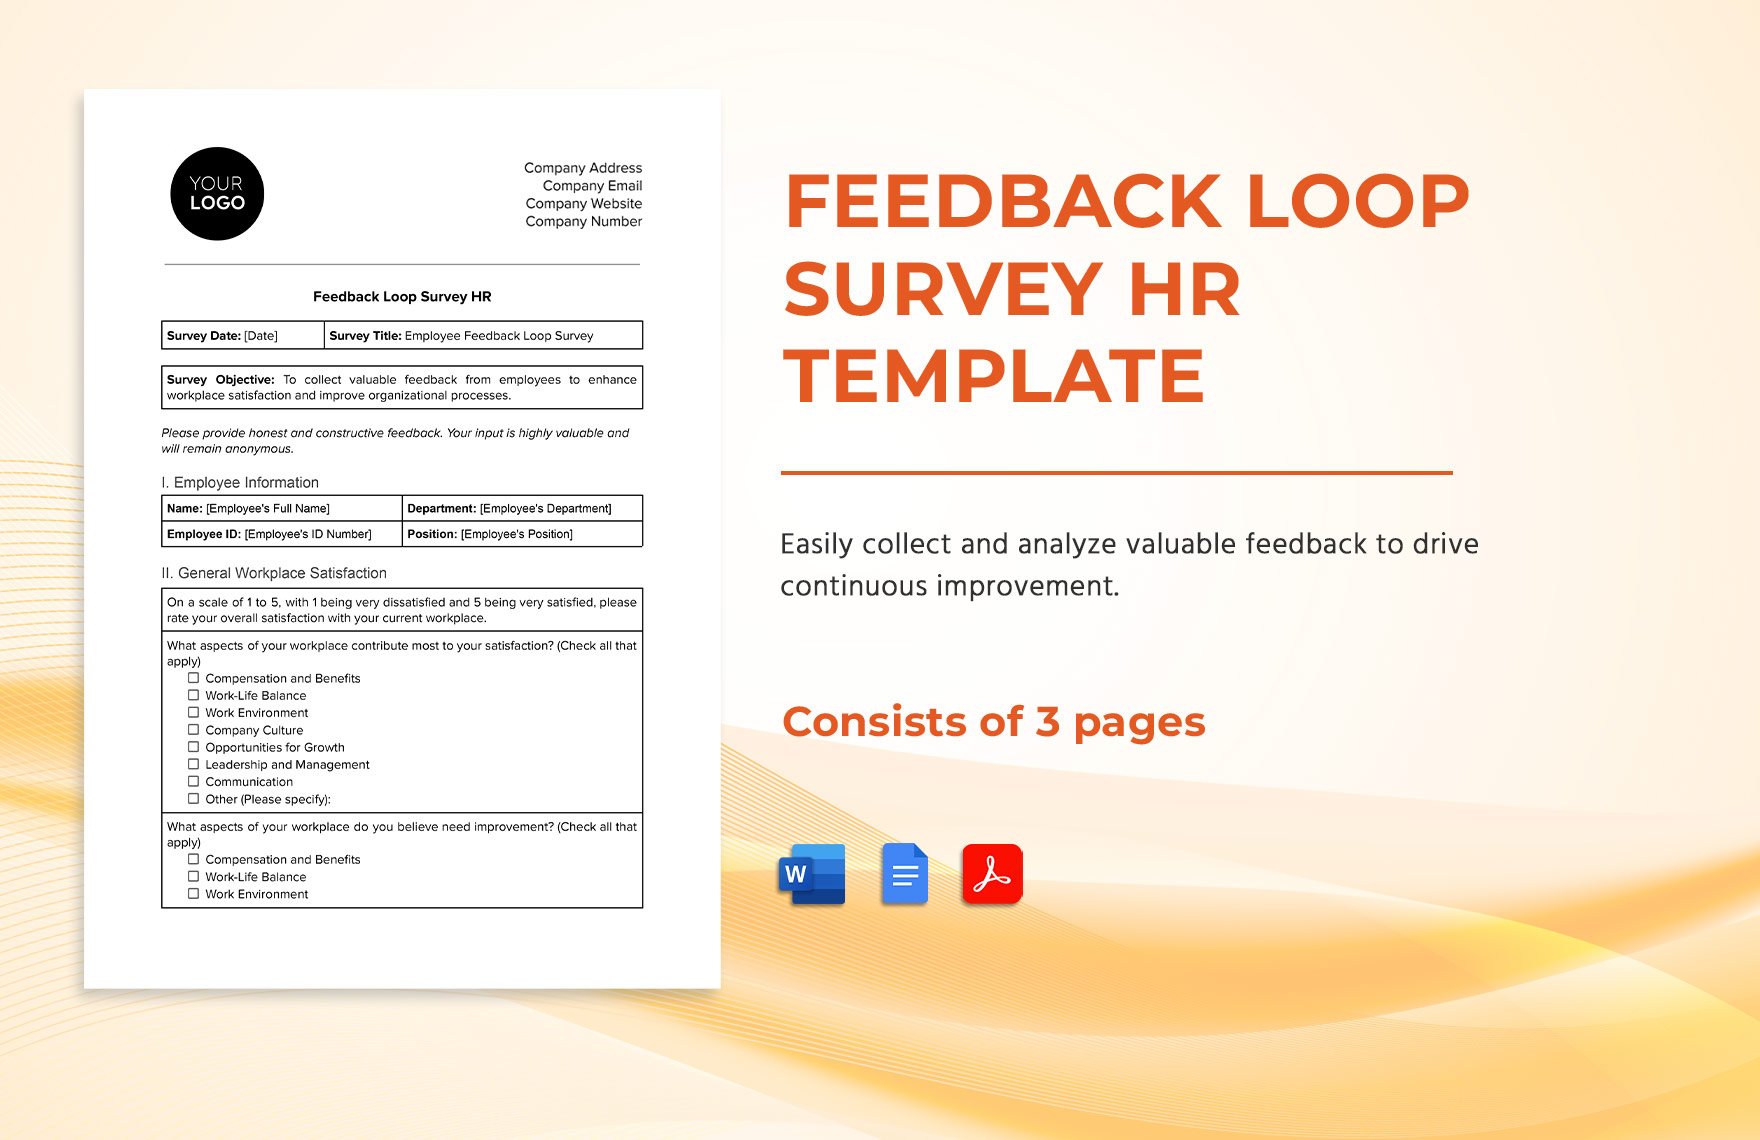 Feedback Loop Survey HR Template